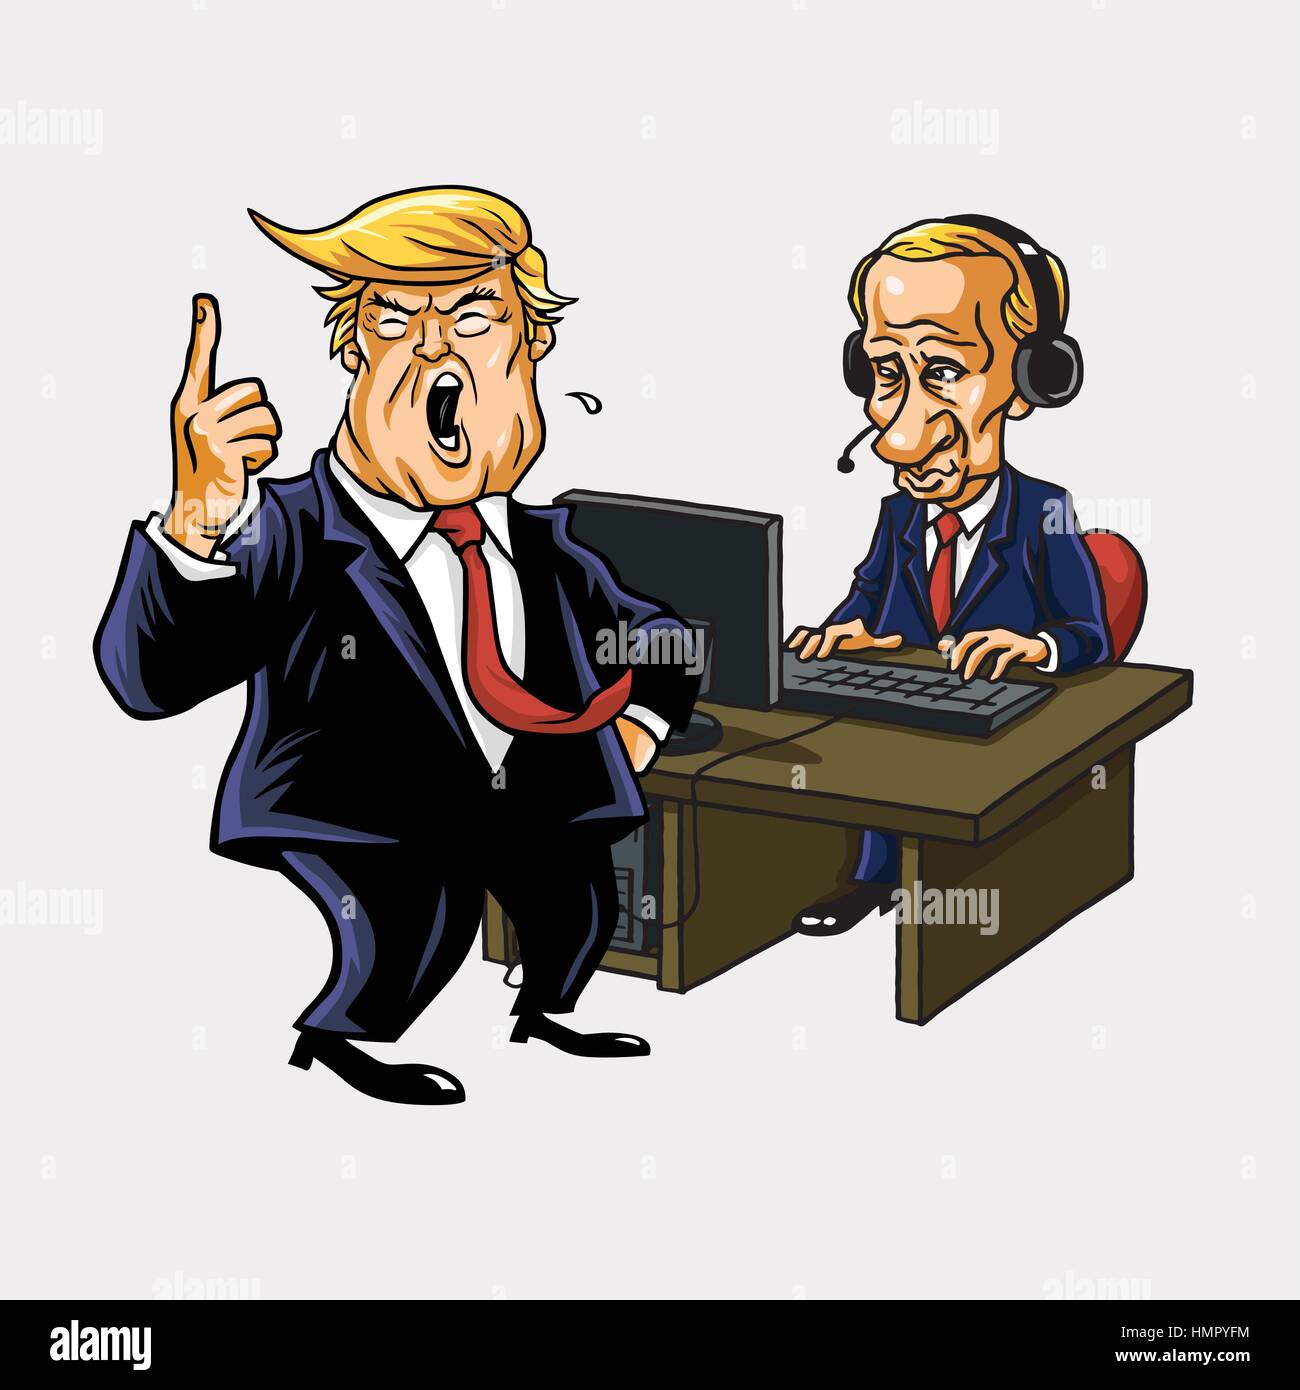 Donald Trump And Vladimir Putin in Front of His Computer. Vector Cartoon Portrait Stock Vector